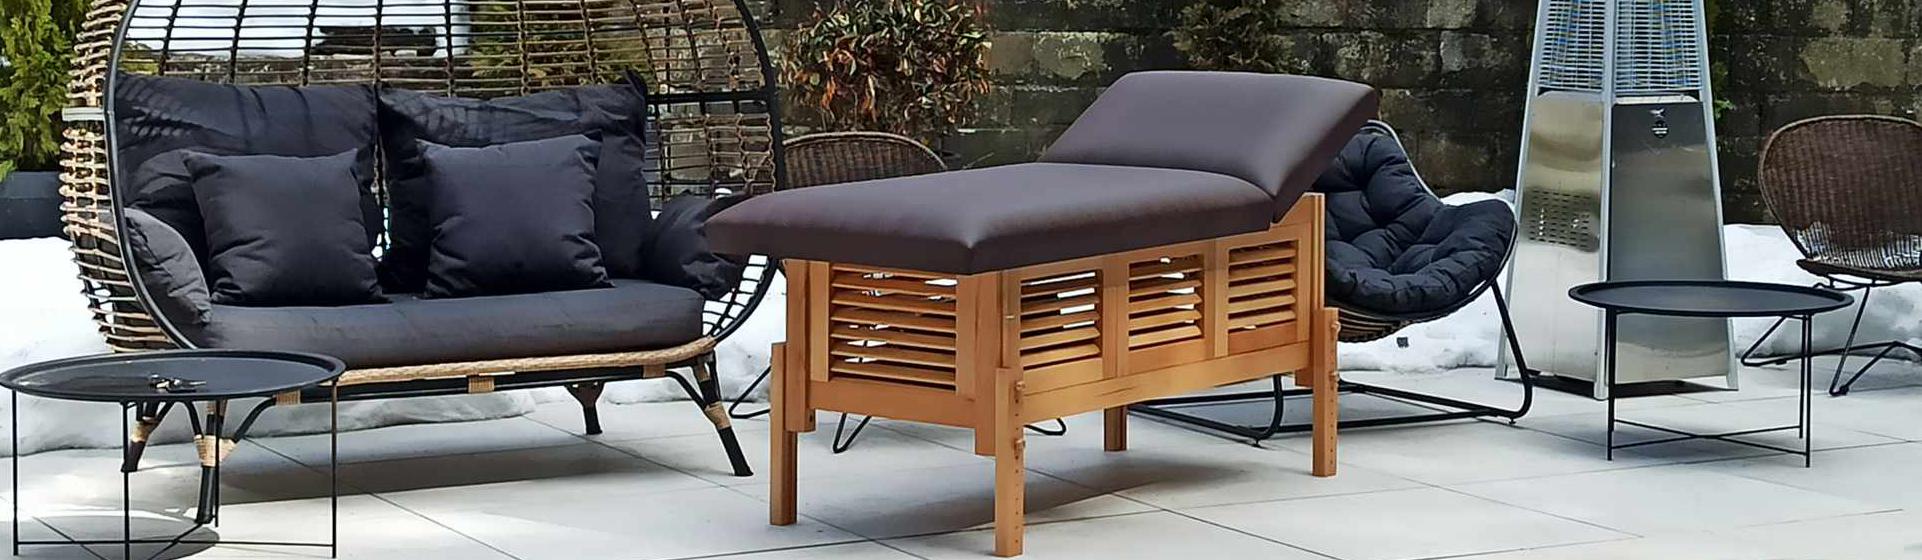 Masă de masaj staționară, model Laguna, de la BIOS, pernă două secțiuni, tapițerie wenge, finisaj lemn natur.